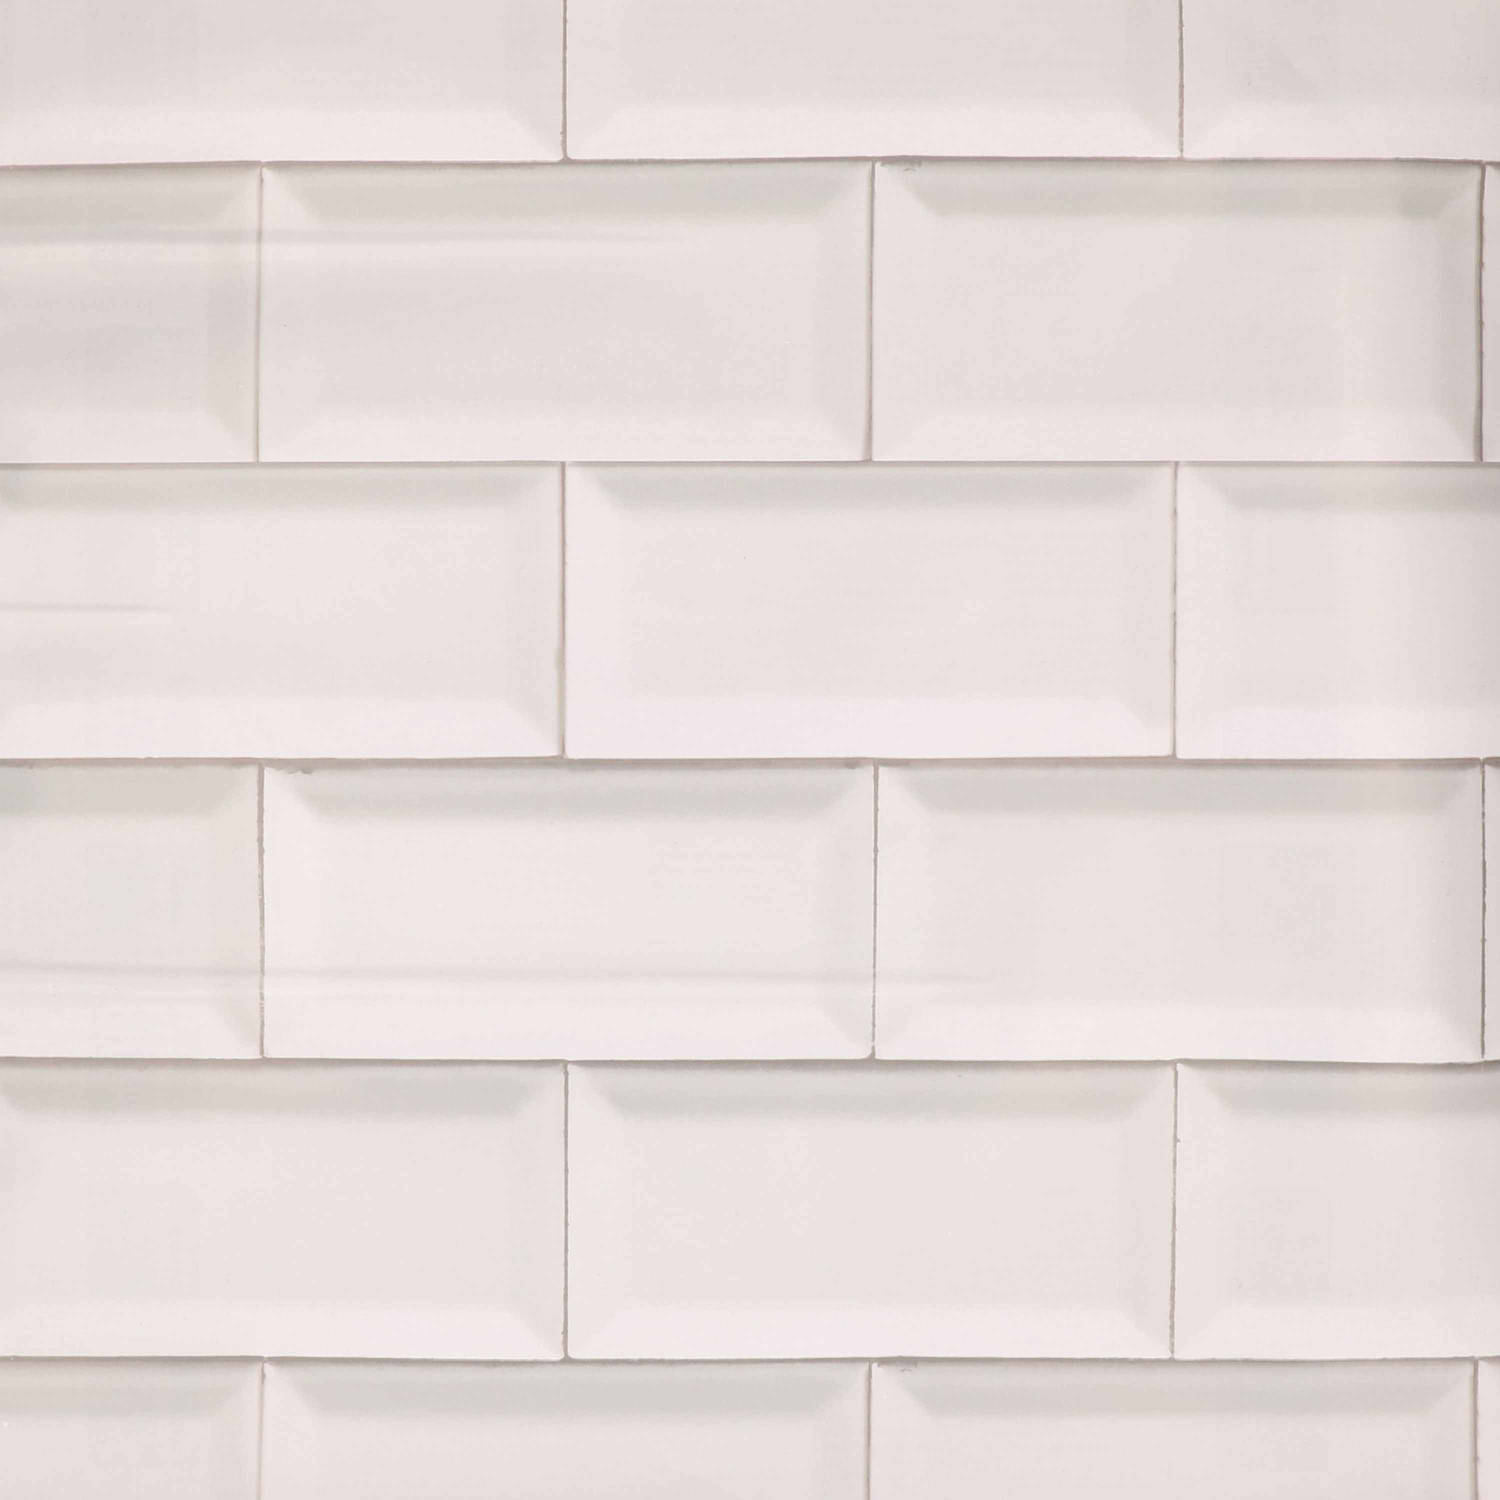 benzine overstroming passend Decoratie plakfolie tegels look wit 45 cm x 2 meter zelfklevend -  Decoratiefolie - Meubelfolie | Blokker